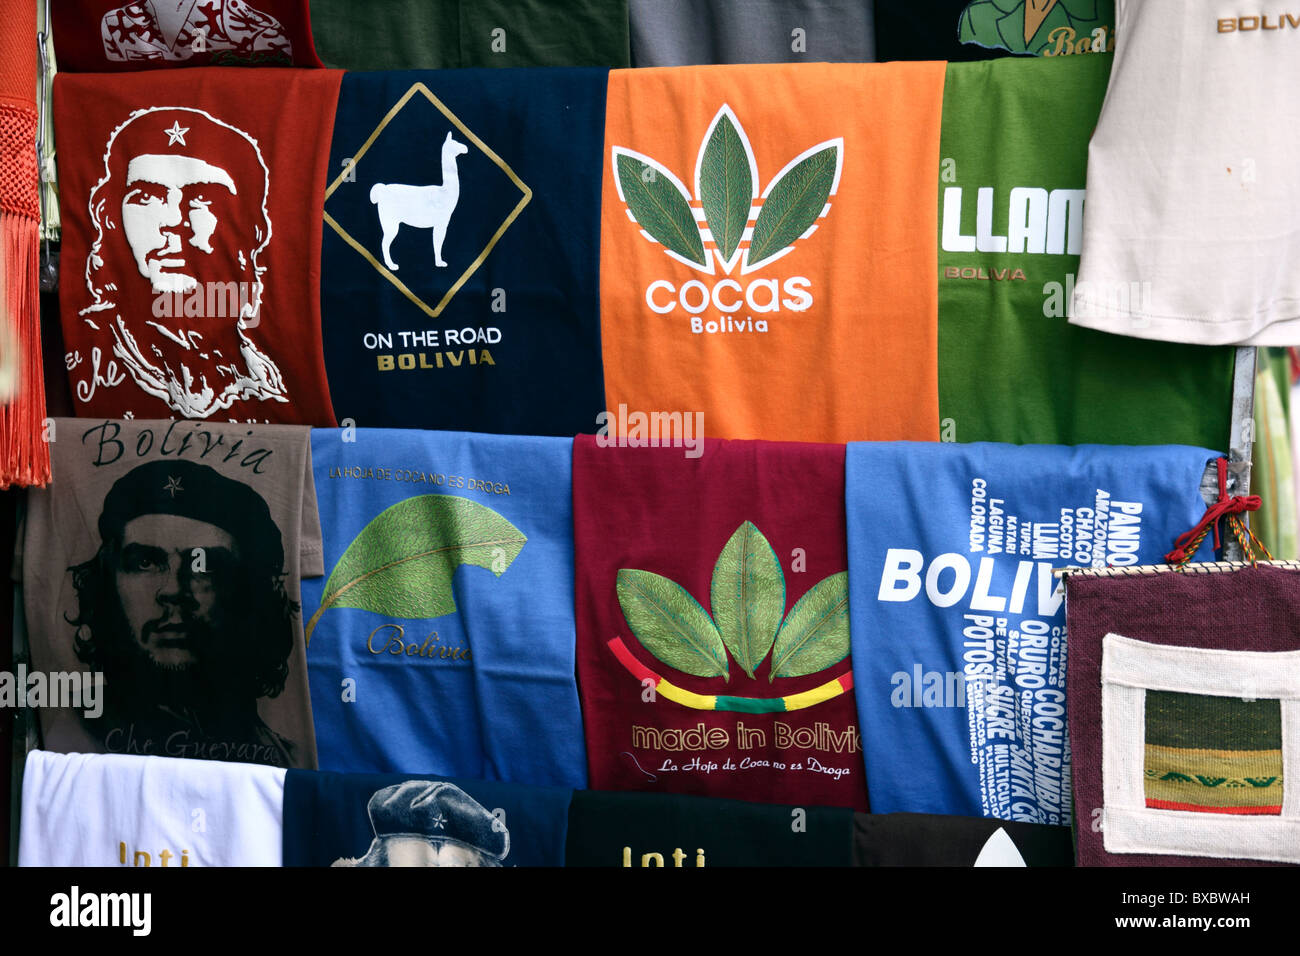 T-shirts avec Che Guevara et feuilles de coca sous forme de logo Adidas à vendre en dehors de magasin dans le marché touristique, Calle Linares, la Paz, Bolivie Banque D'Images